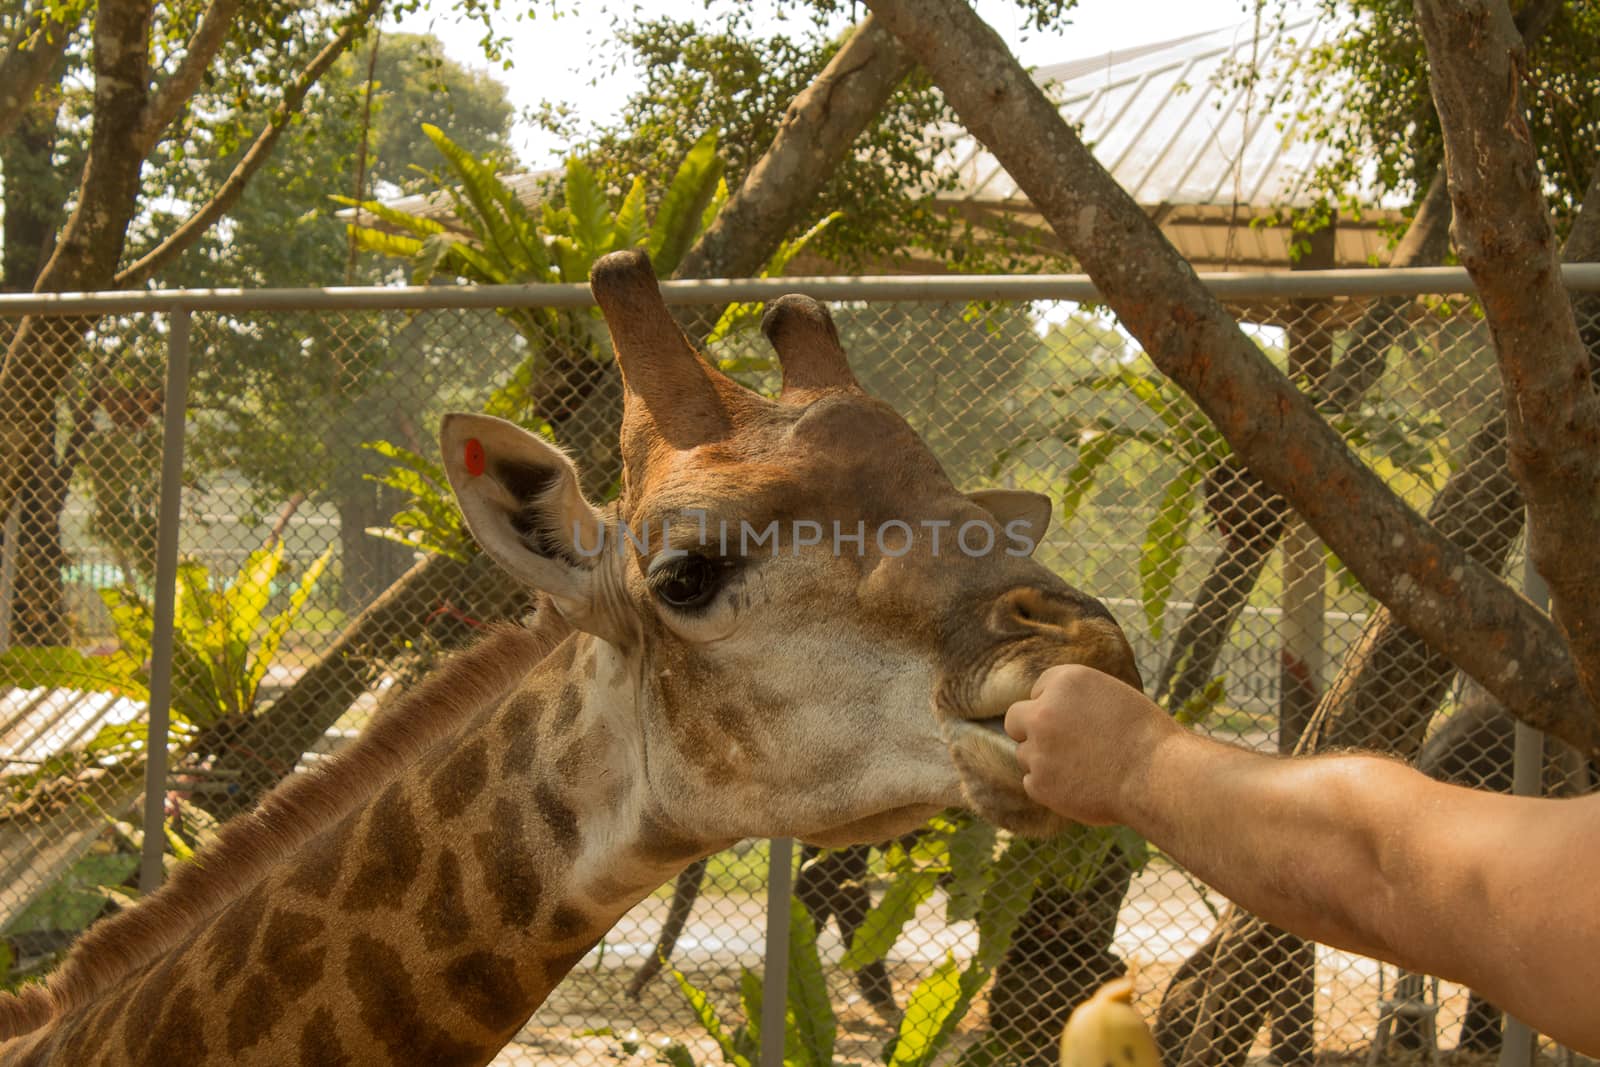 giraffe eat from the hands of man